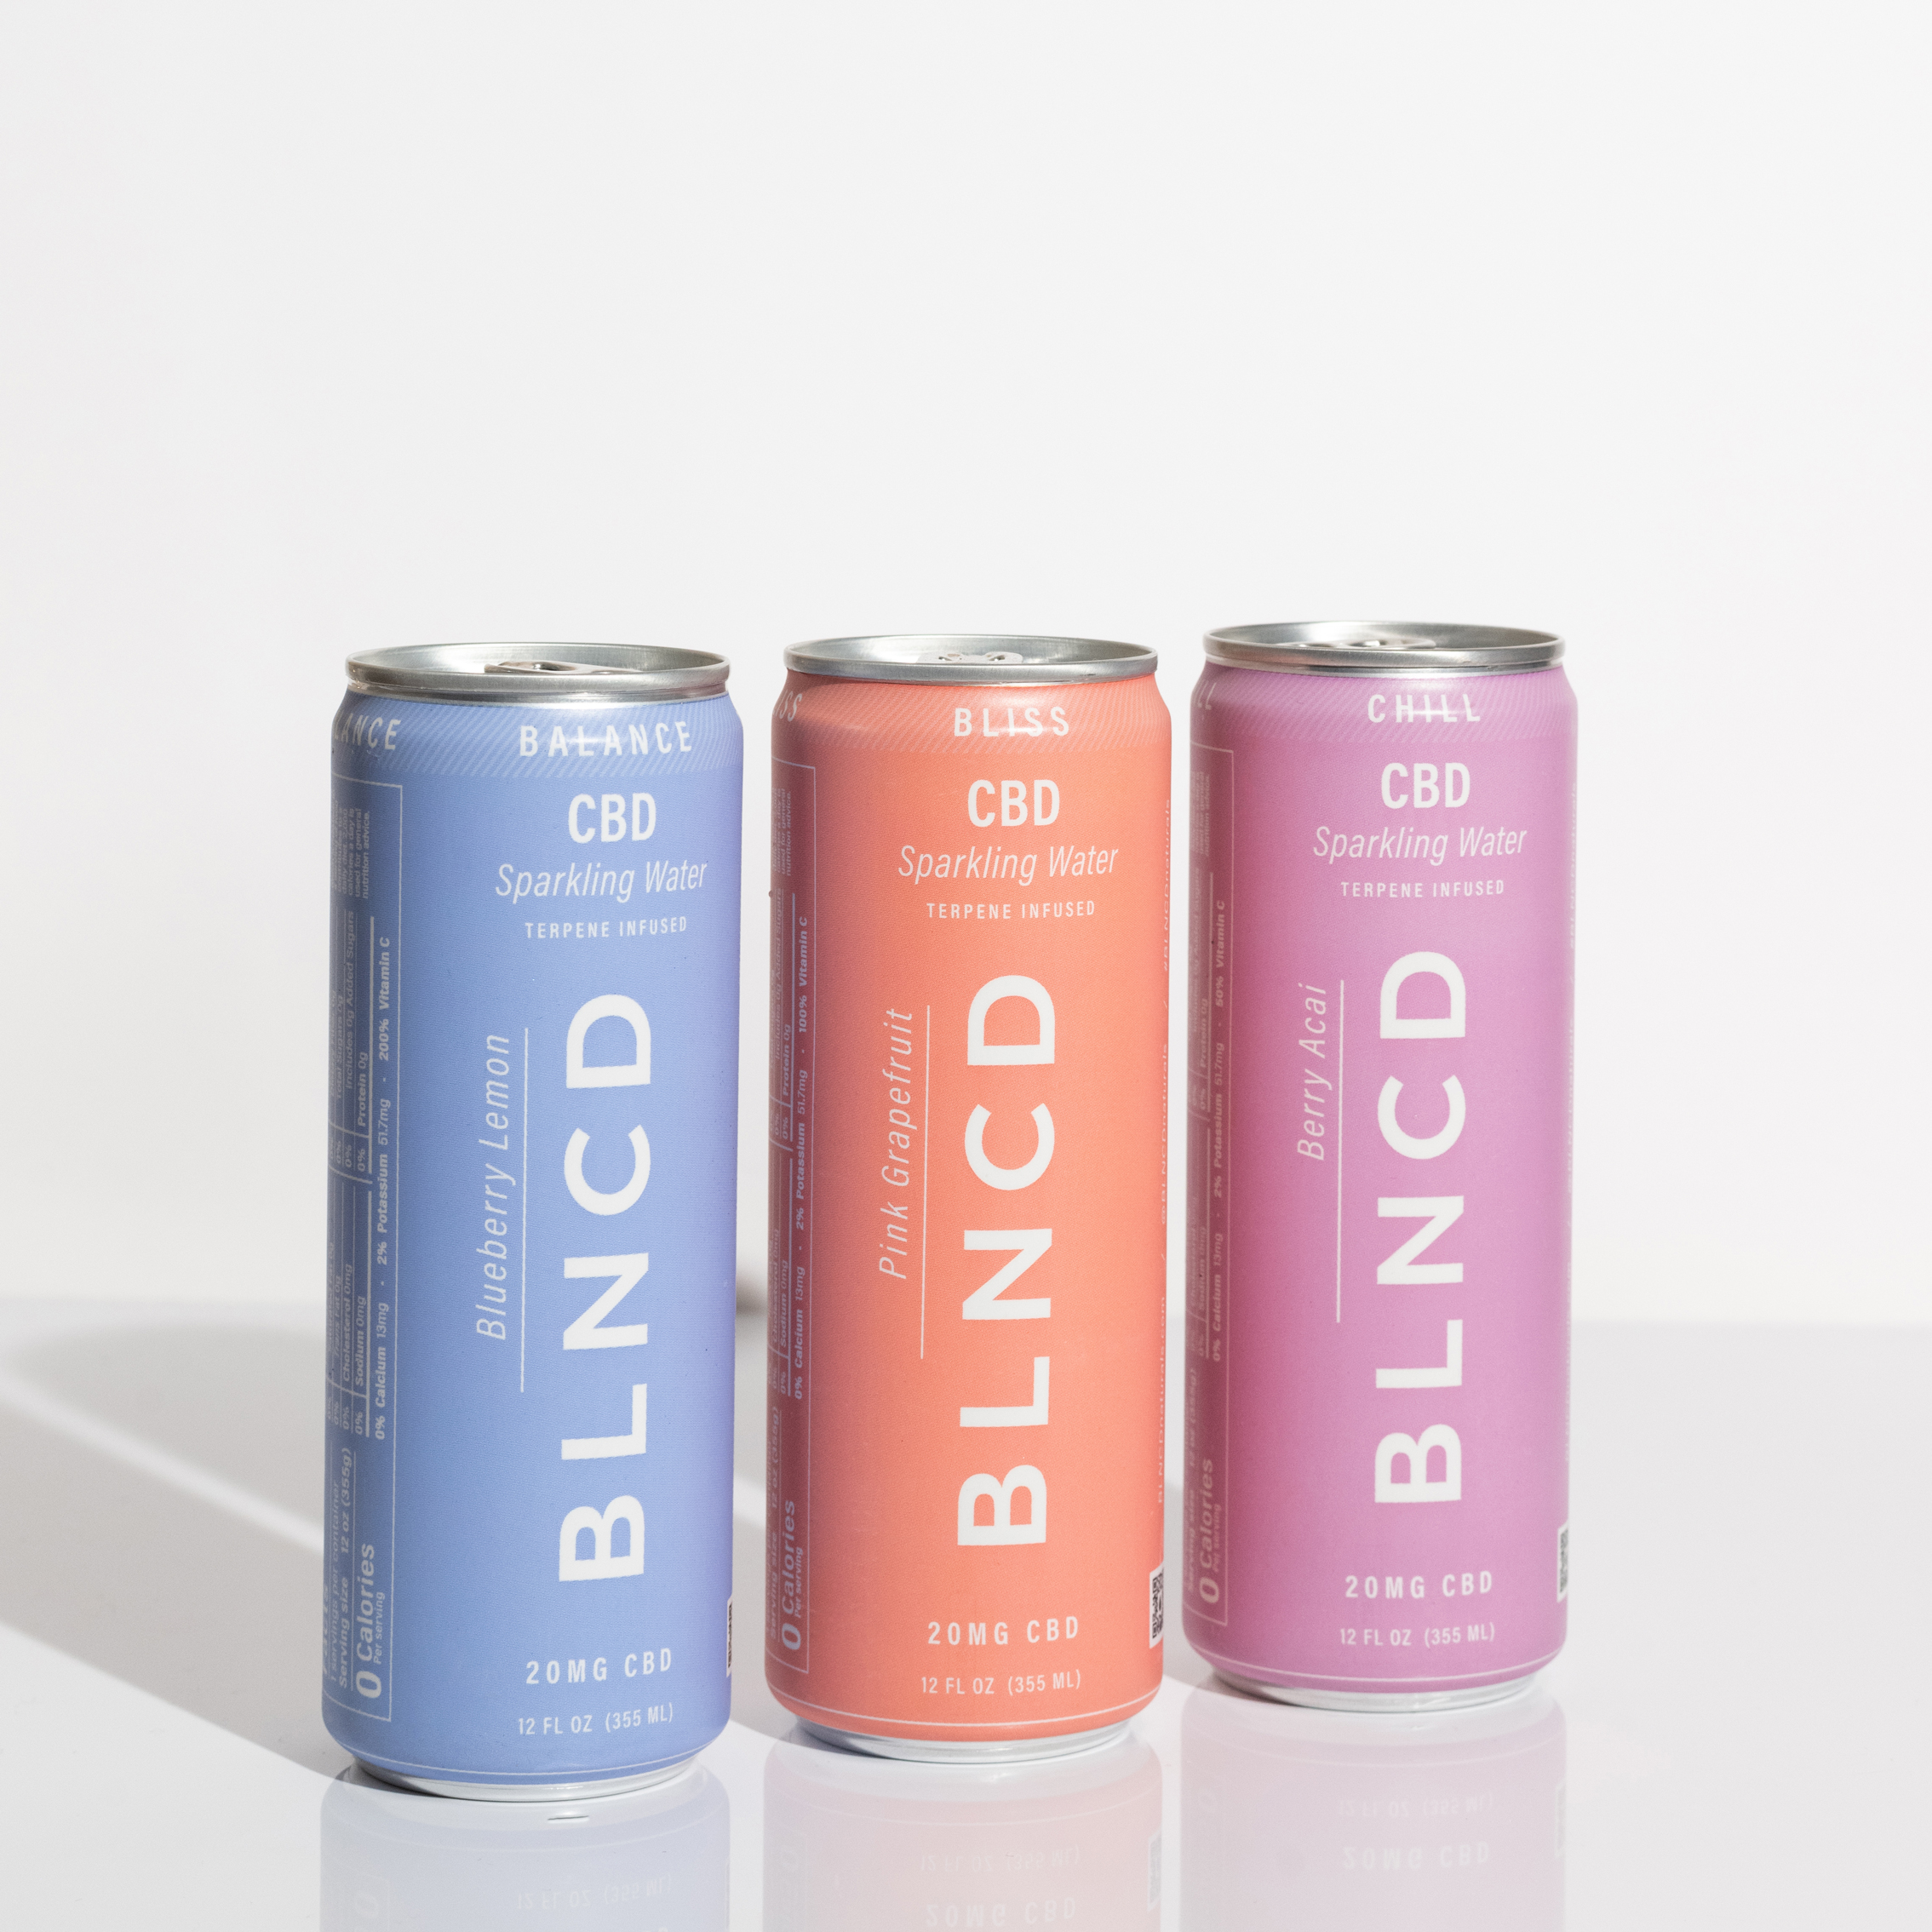 BLNCD CBD Infused Sparkling Water - Sampler 4 of Each Flavor